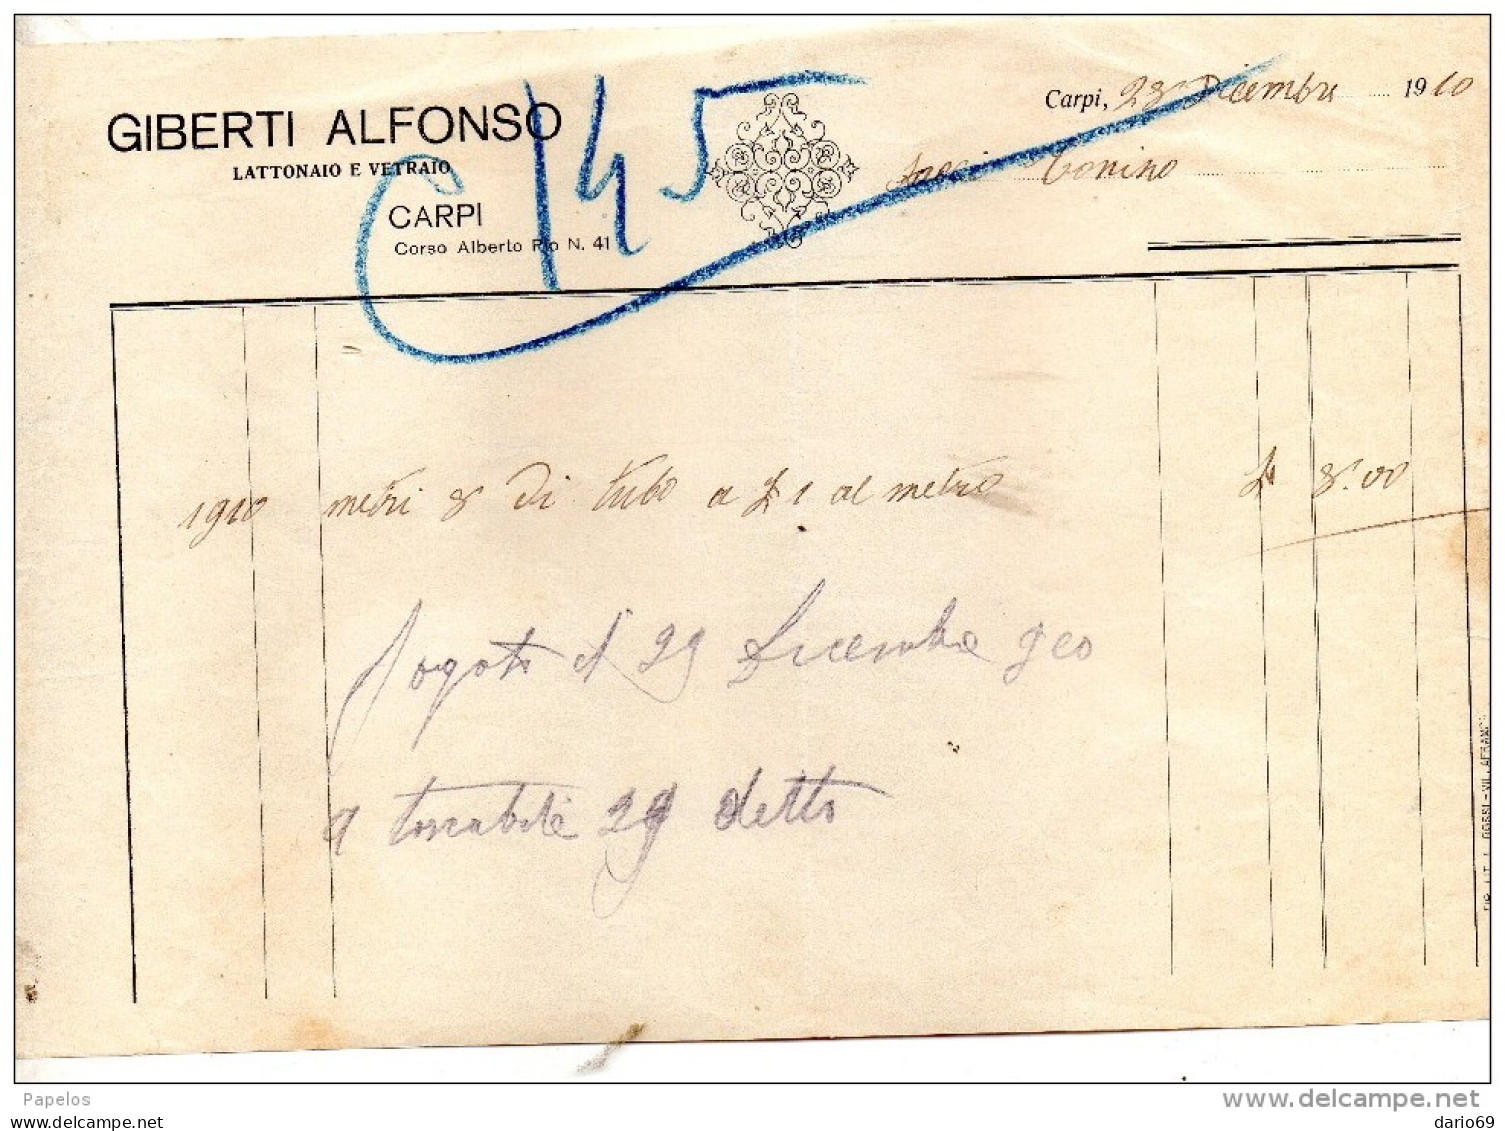 1910 CARPI - GIBERTI ALFONSO LATTONAIO E VETRAIO - Italien